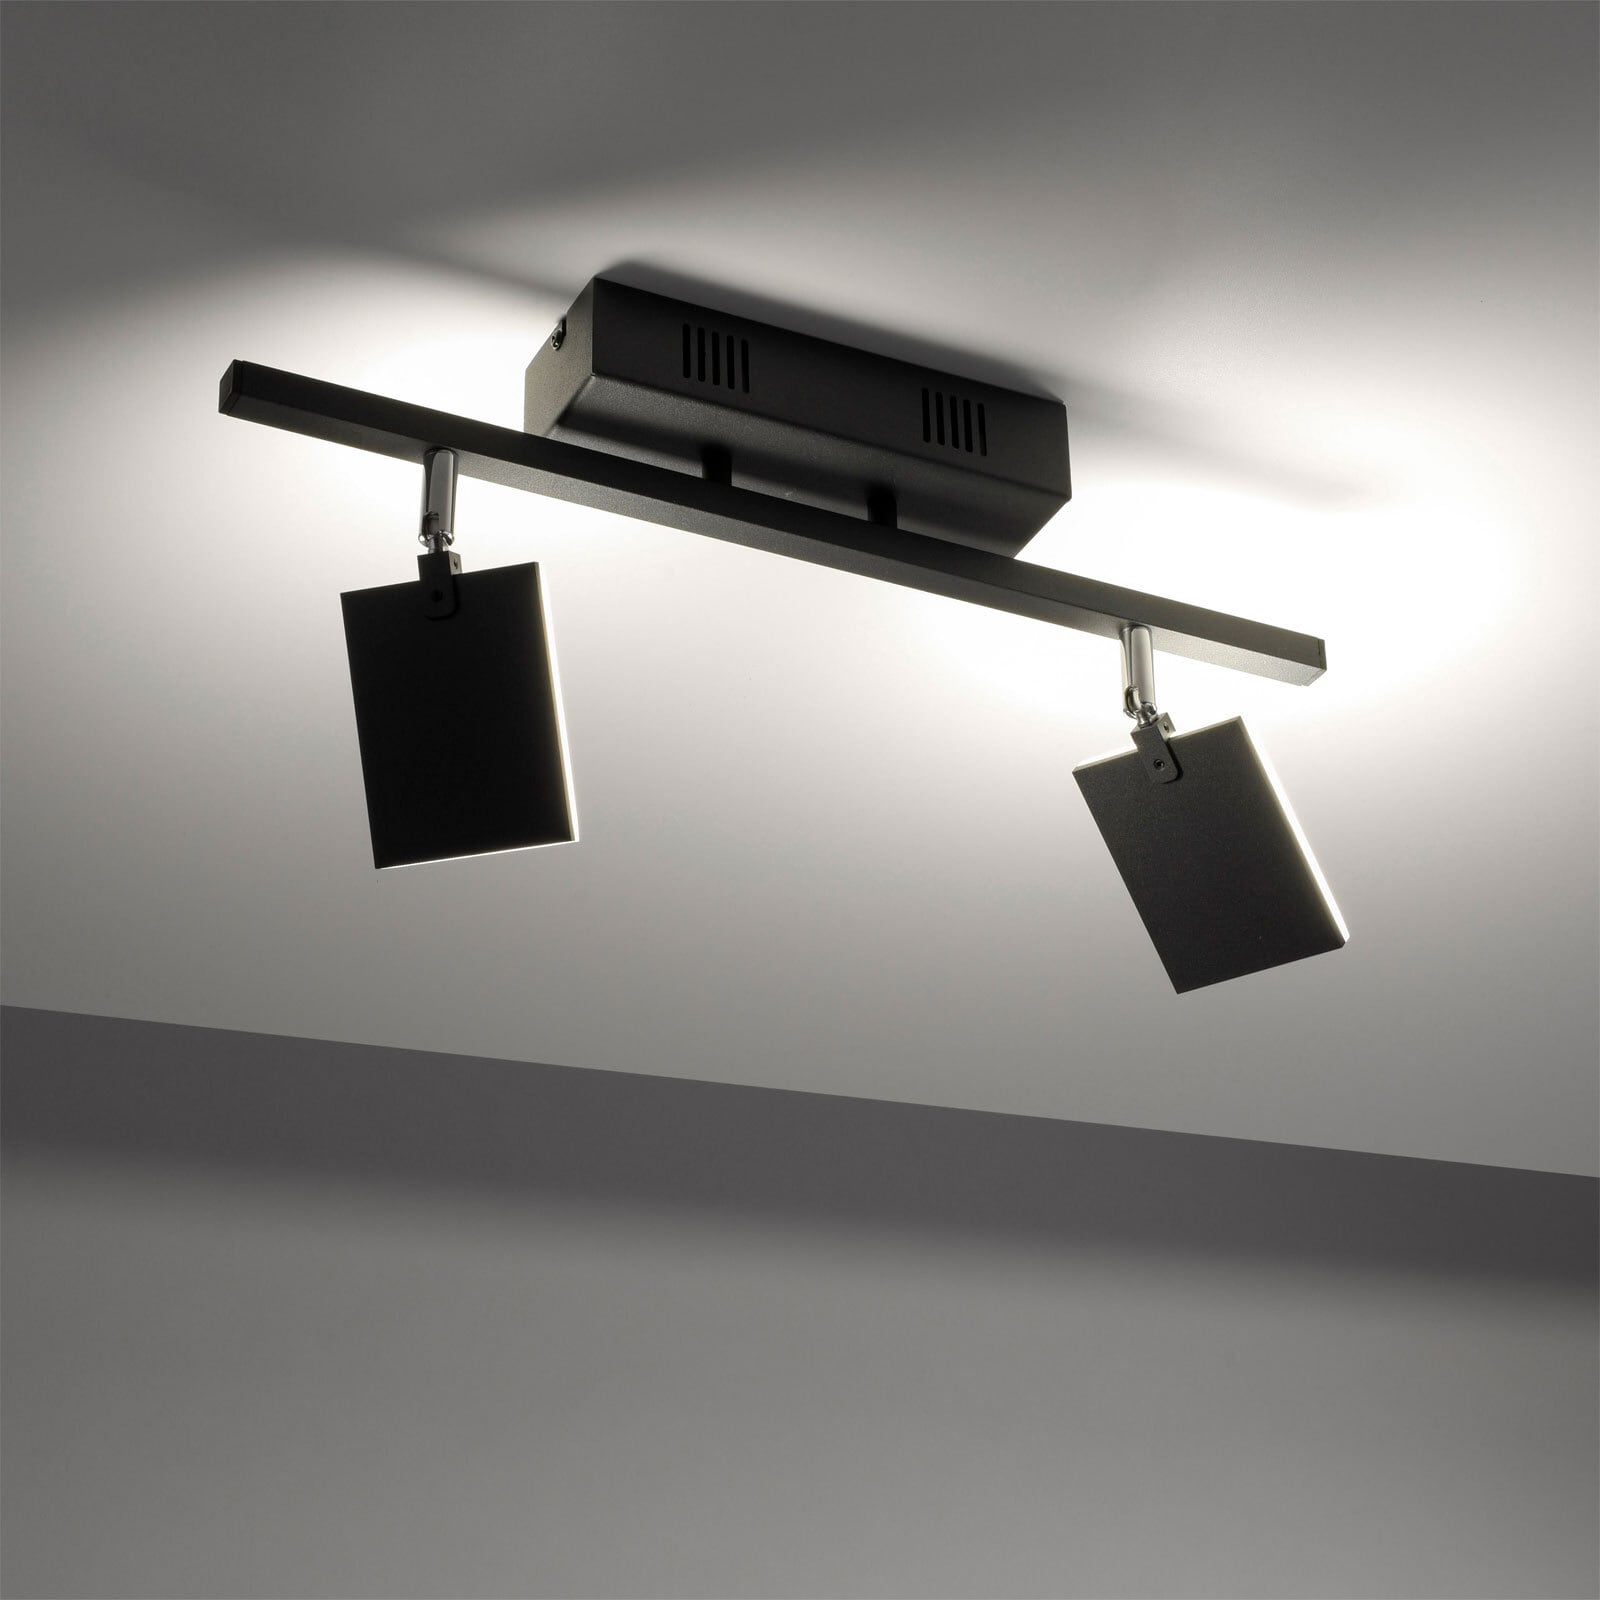 Paul Neuhaus LED Deckenlampe mit 2 Spots PURE-MIRA schwarz